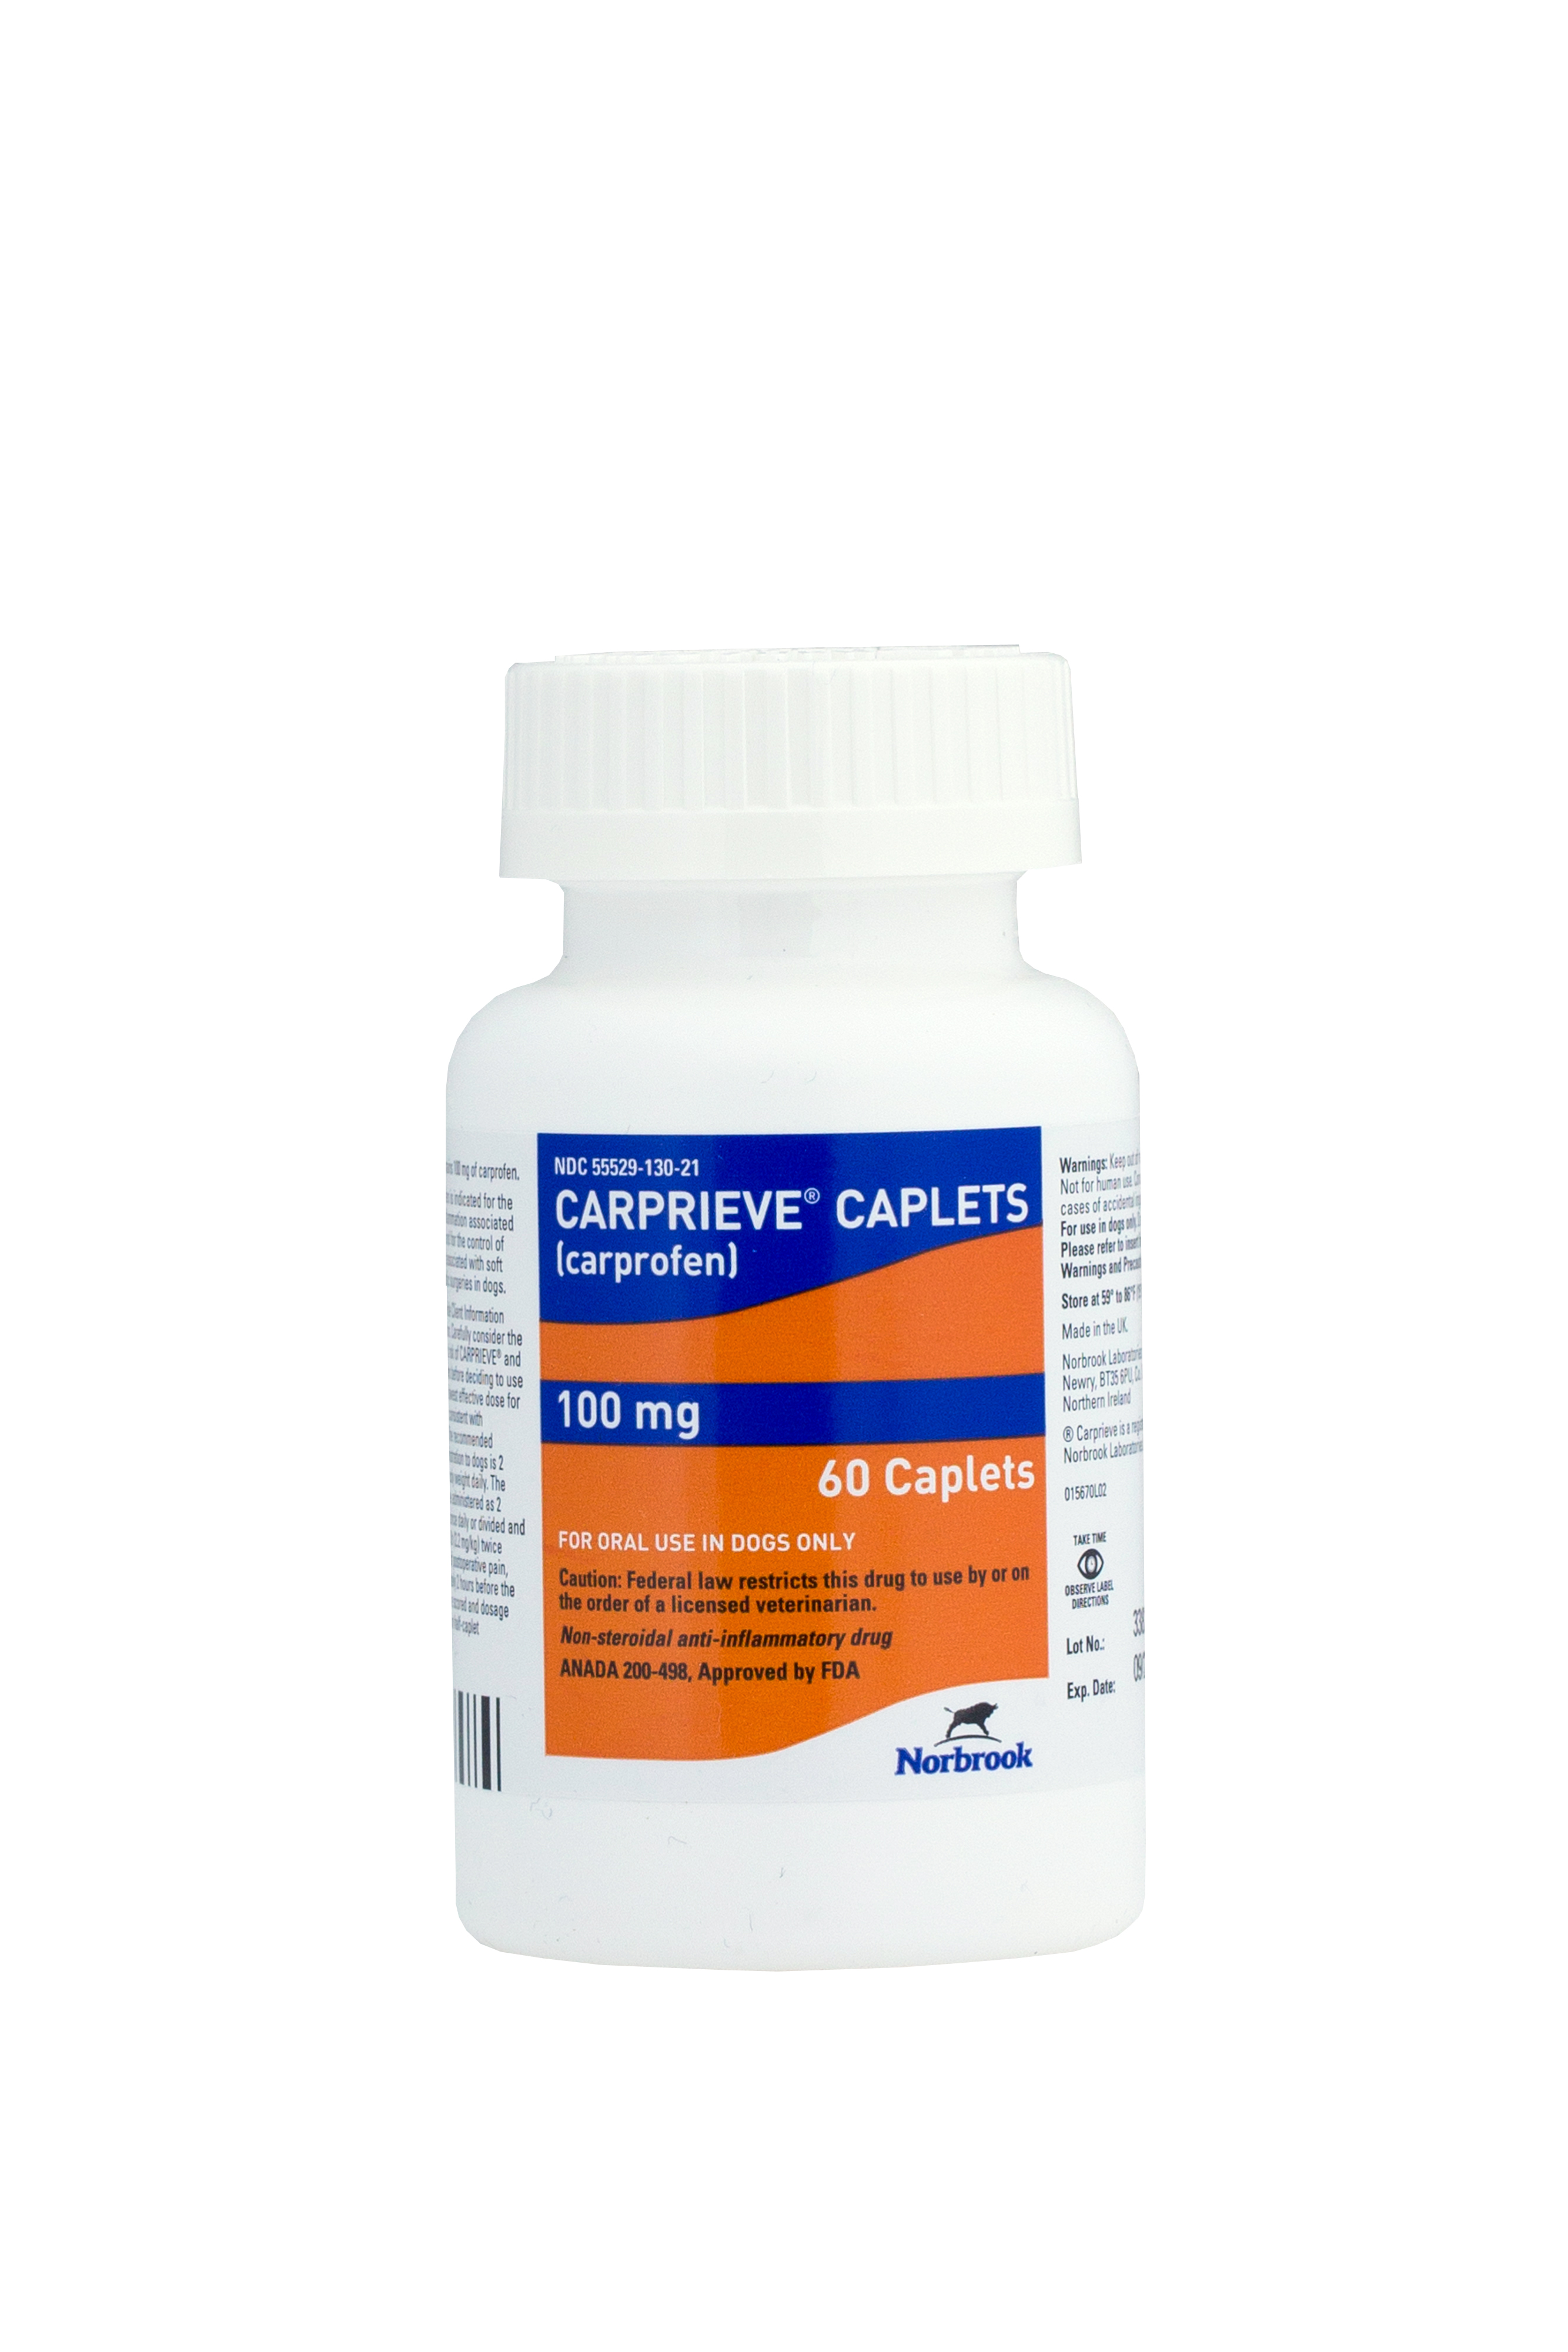 CARPRIEVE 100MG x 60 Caplets  [carprofen] EXP 9/24